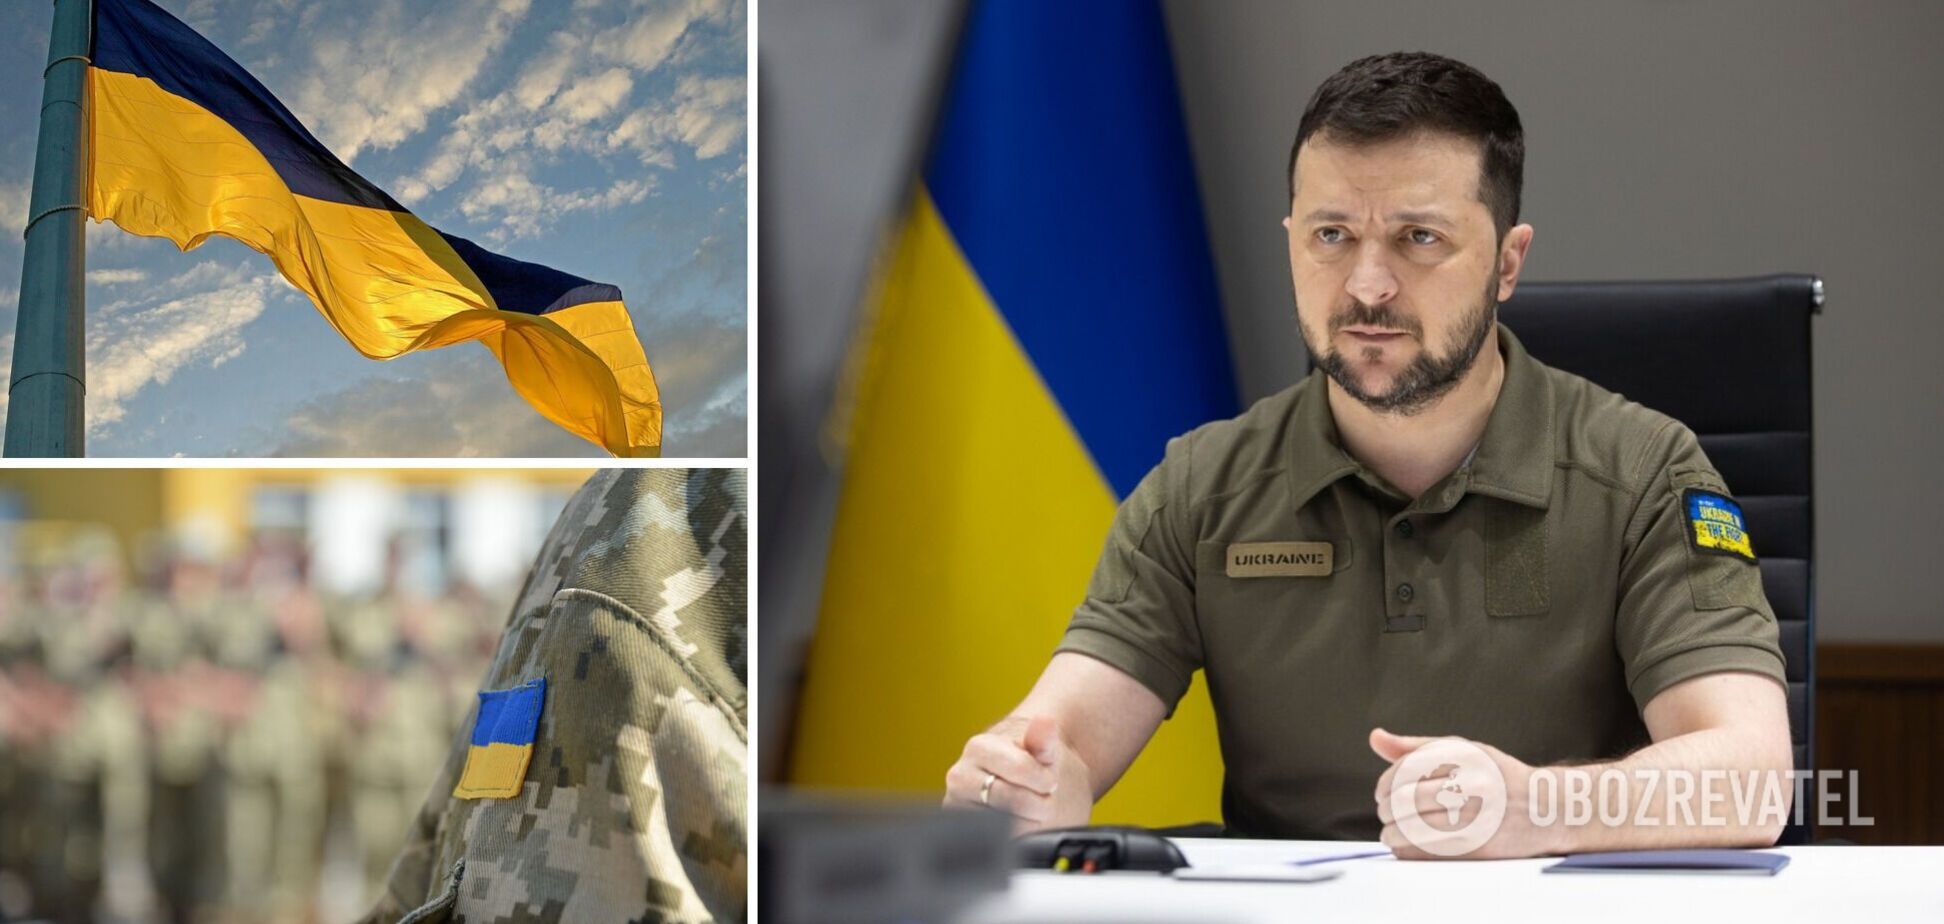 Зеленский установил награду 'За оборону Украины': кого будут награждать